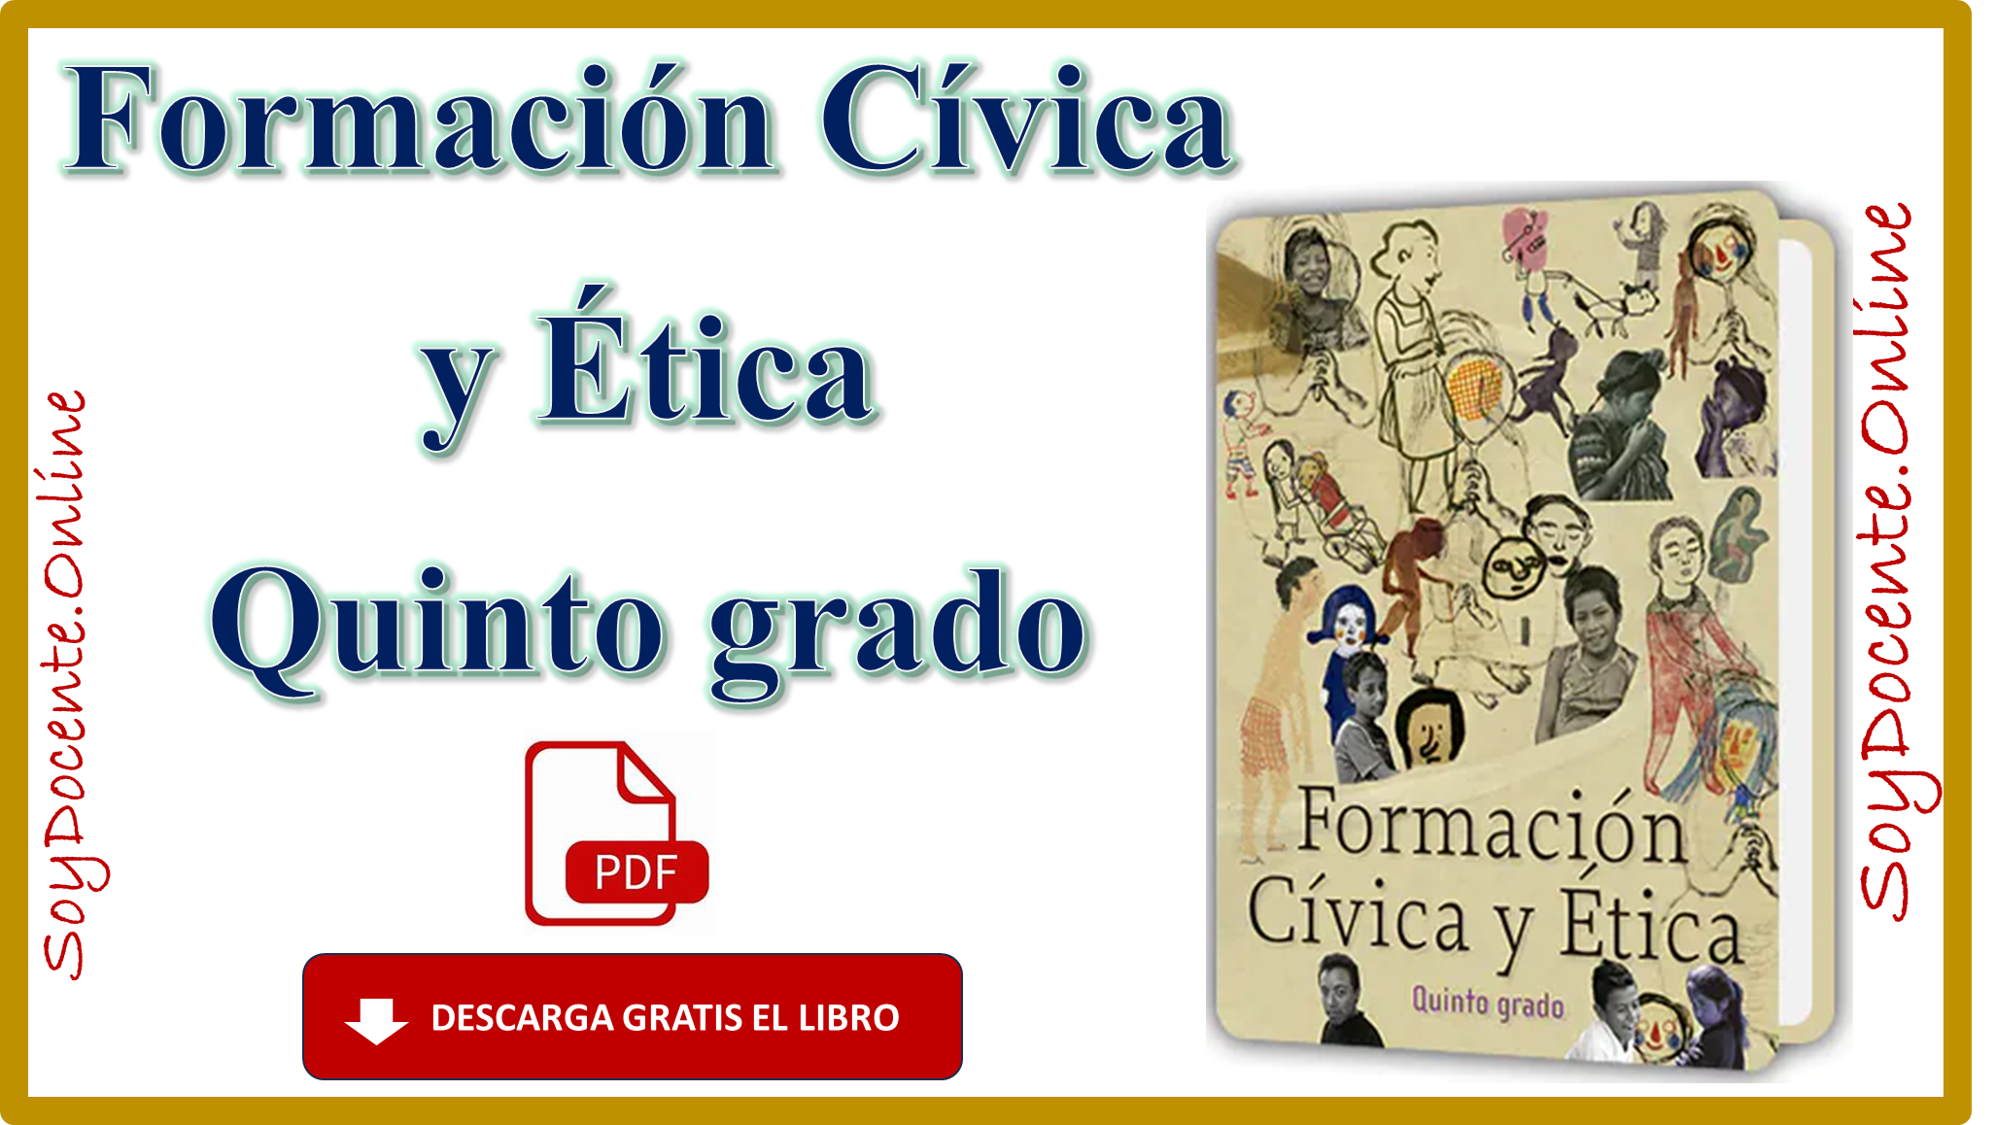 Descarga en PDF el Libro de Formación Cívica y Ética quinto grado de Primaria, obra de la SEP y distribuido por la CONALITEG. 